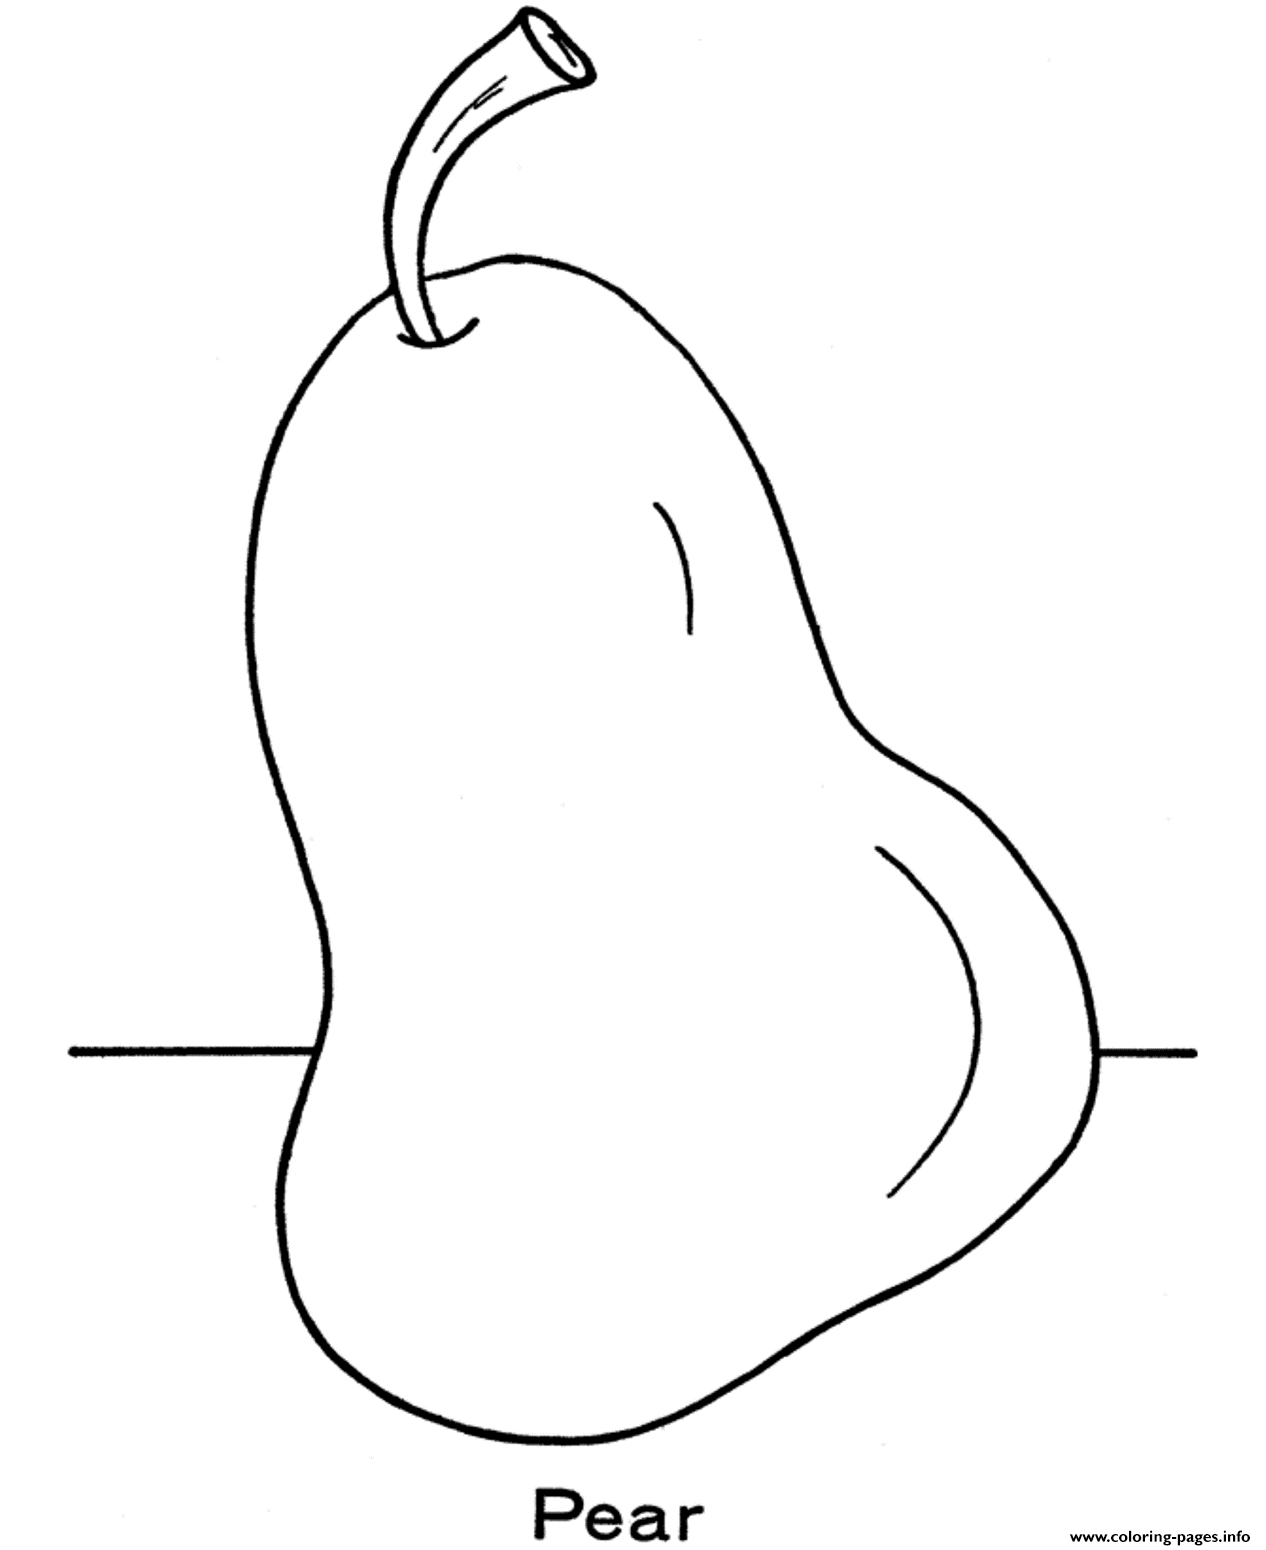 Pear Fruit Sa8f8 coloring